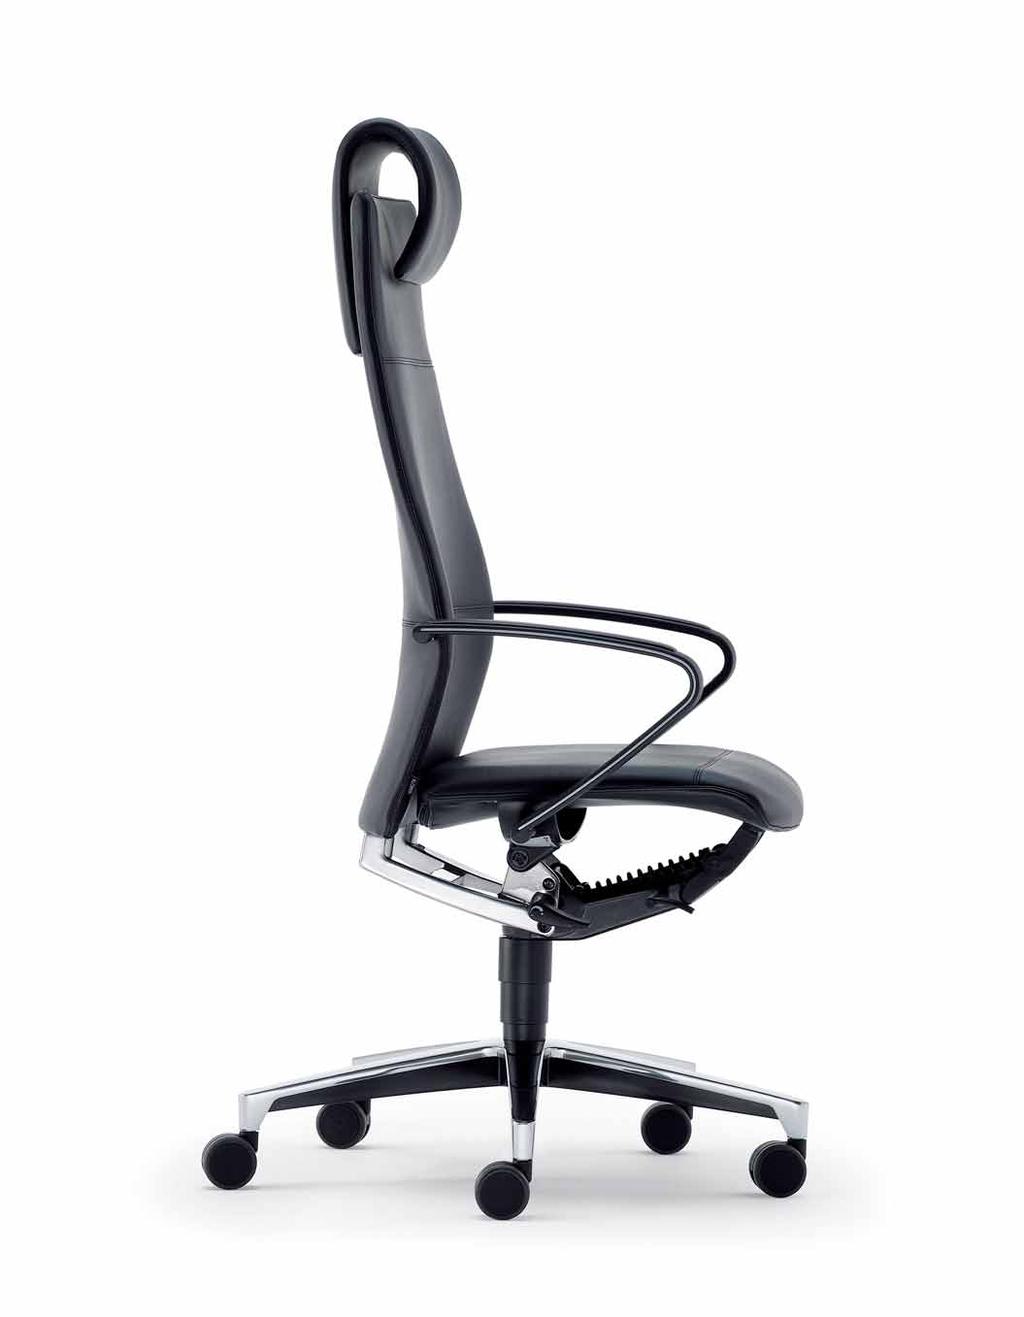 Und die unsichtbare Netzbespannung DLX (Duo-Latex) macht die Kopfstütze schön schlank. Slim chairs to slim down your workload.